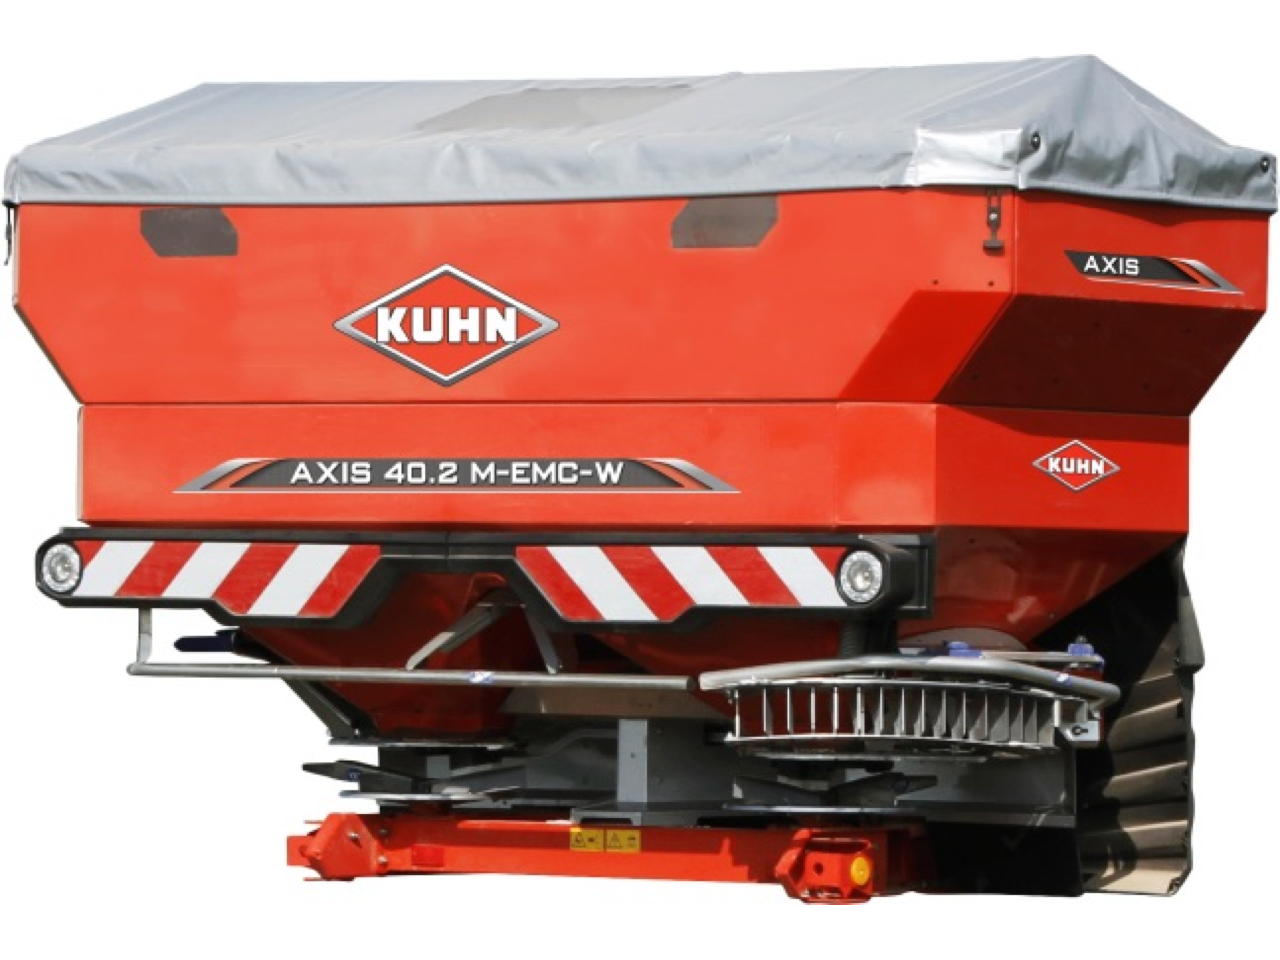 Kuhn Axis 40.2 H EMC W